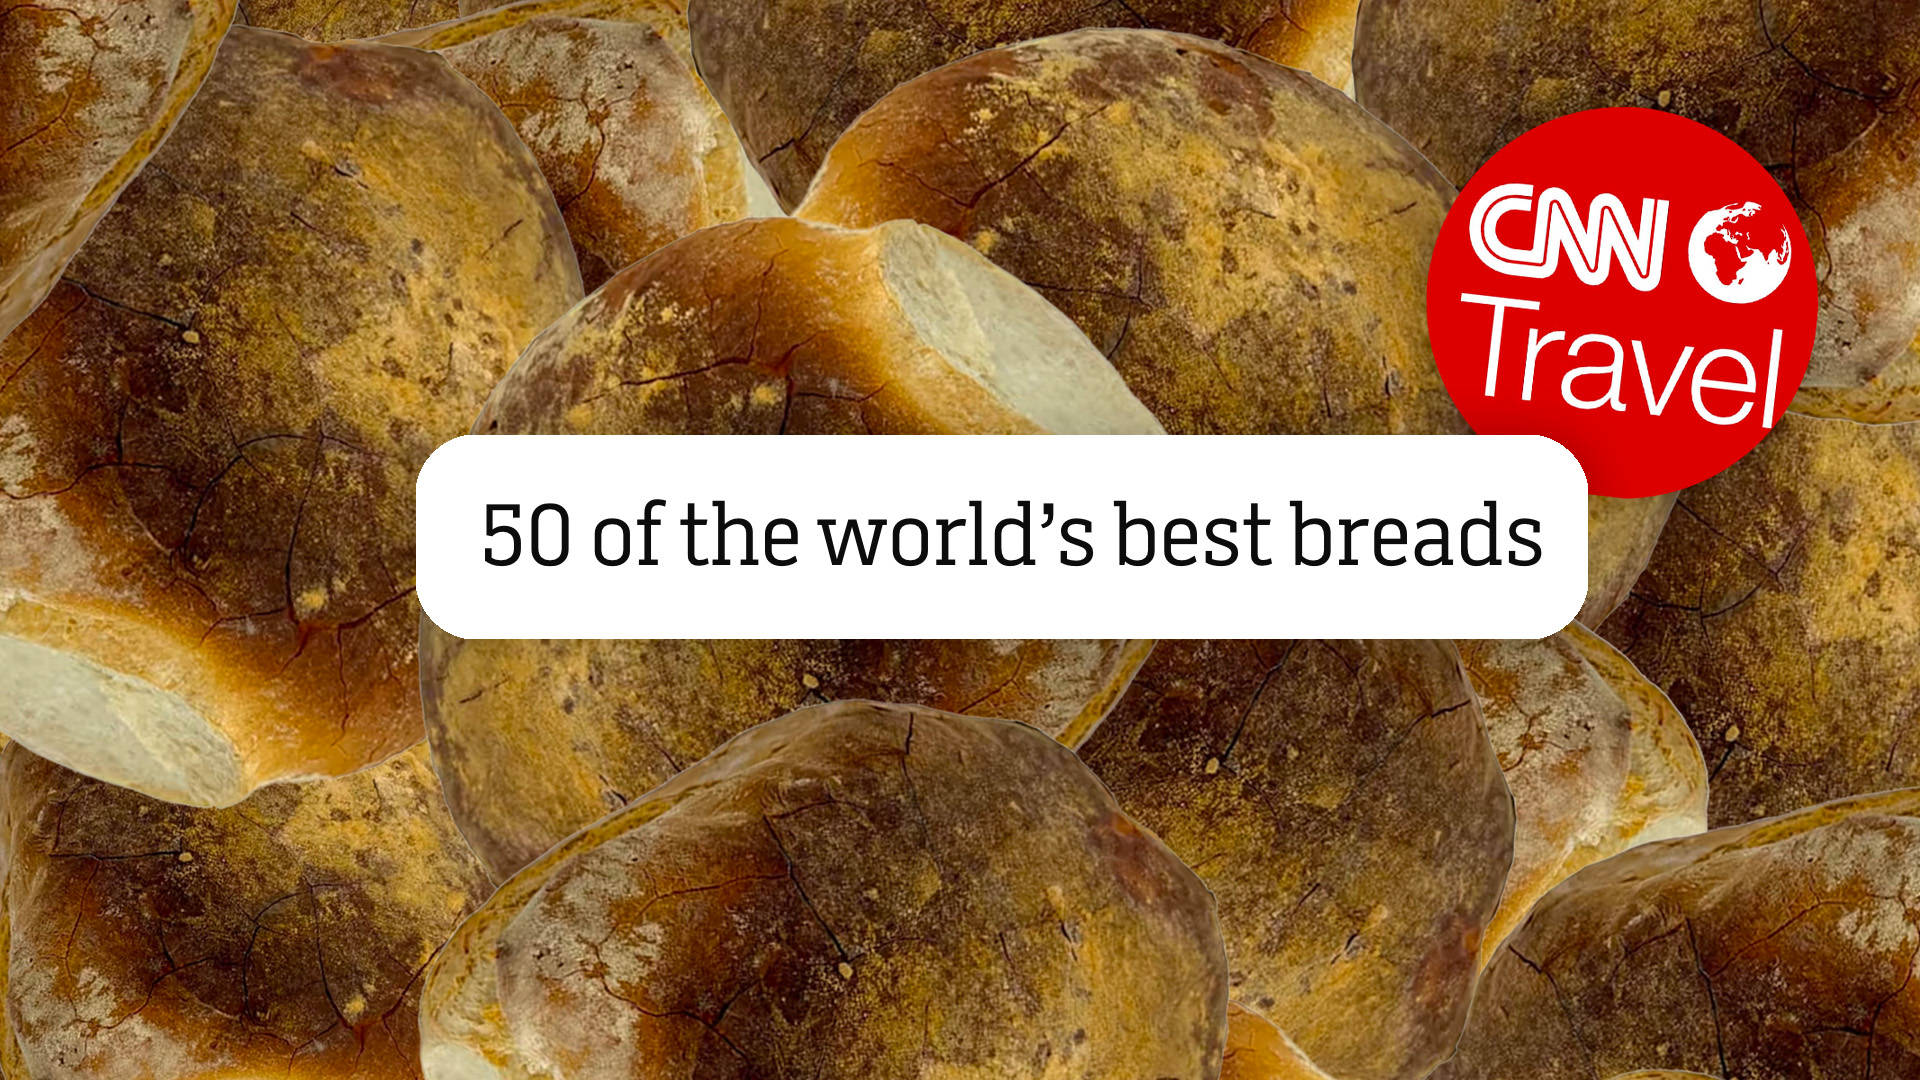 Malta's Ħobż tal-Malti Makes It On CNN's 50 World's Best Breads